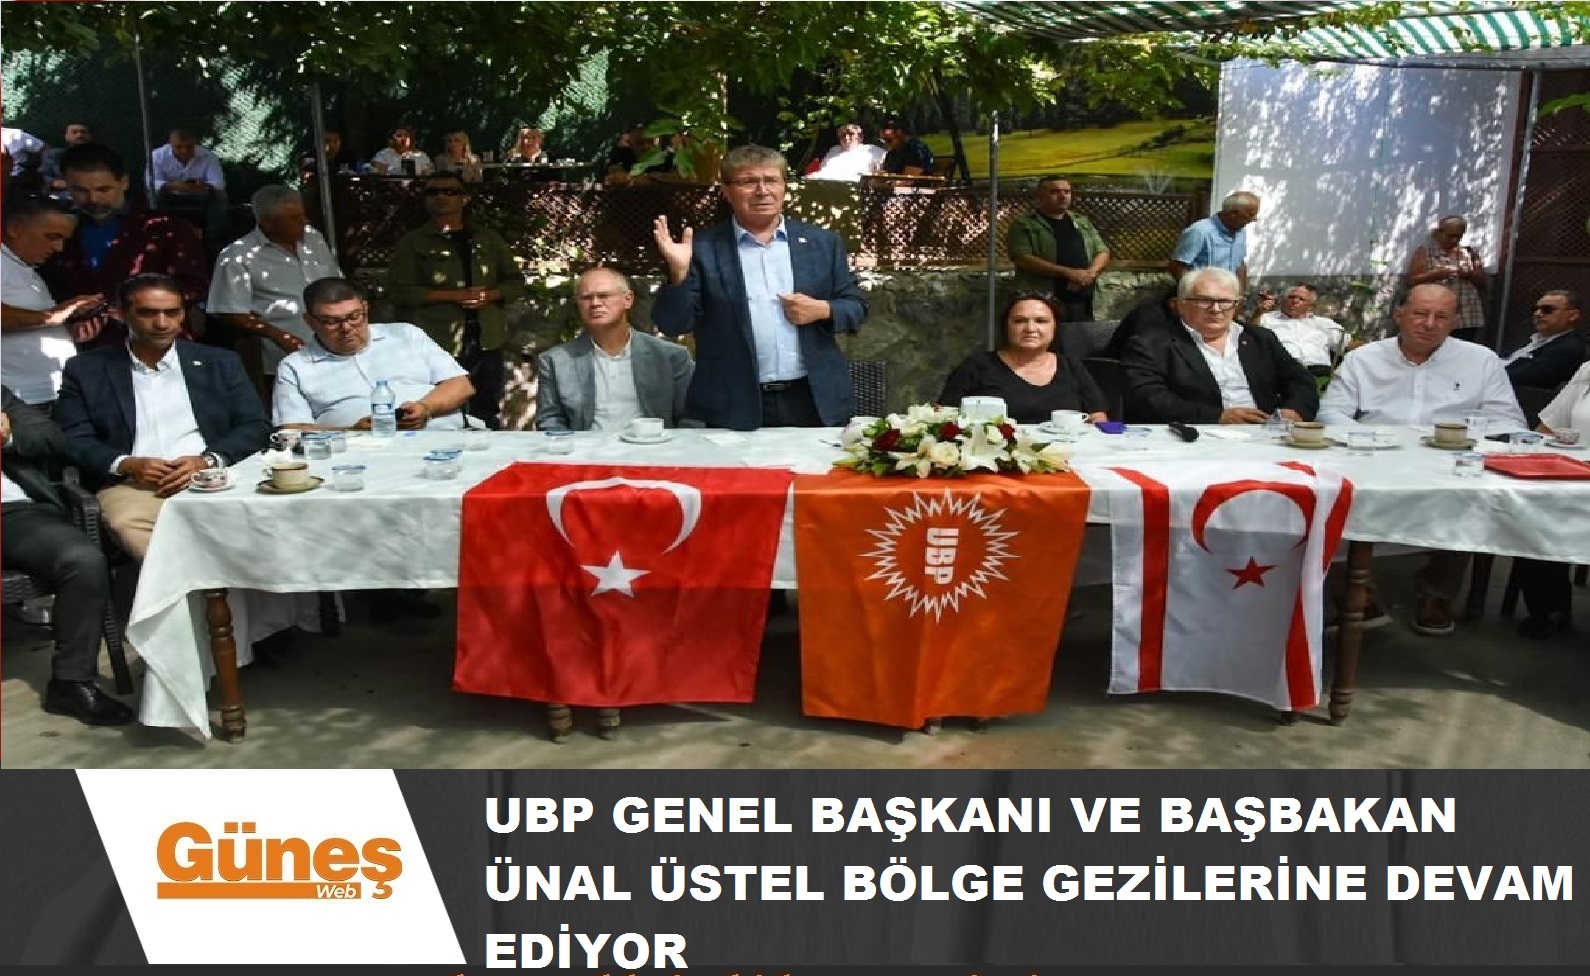 You are currently viewing UBP Genel Başkanı ve Başbakan Ünal Üstel, bölge gezileri kapsamında, Girne Boğaz ve çevre köylerinden vatandaşlarla bir araya geldi.